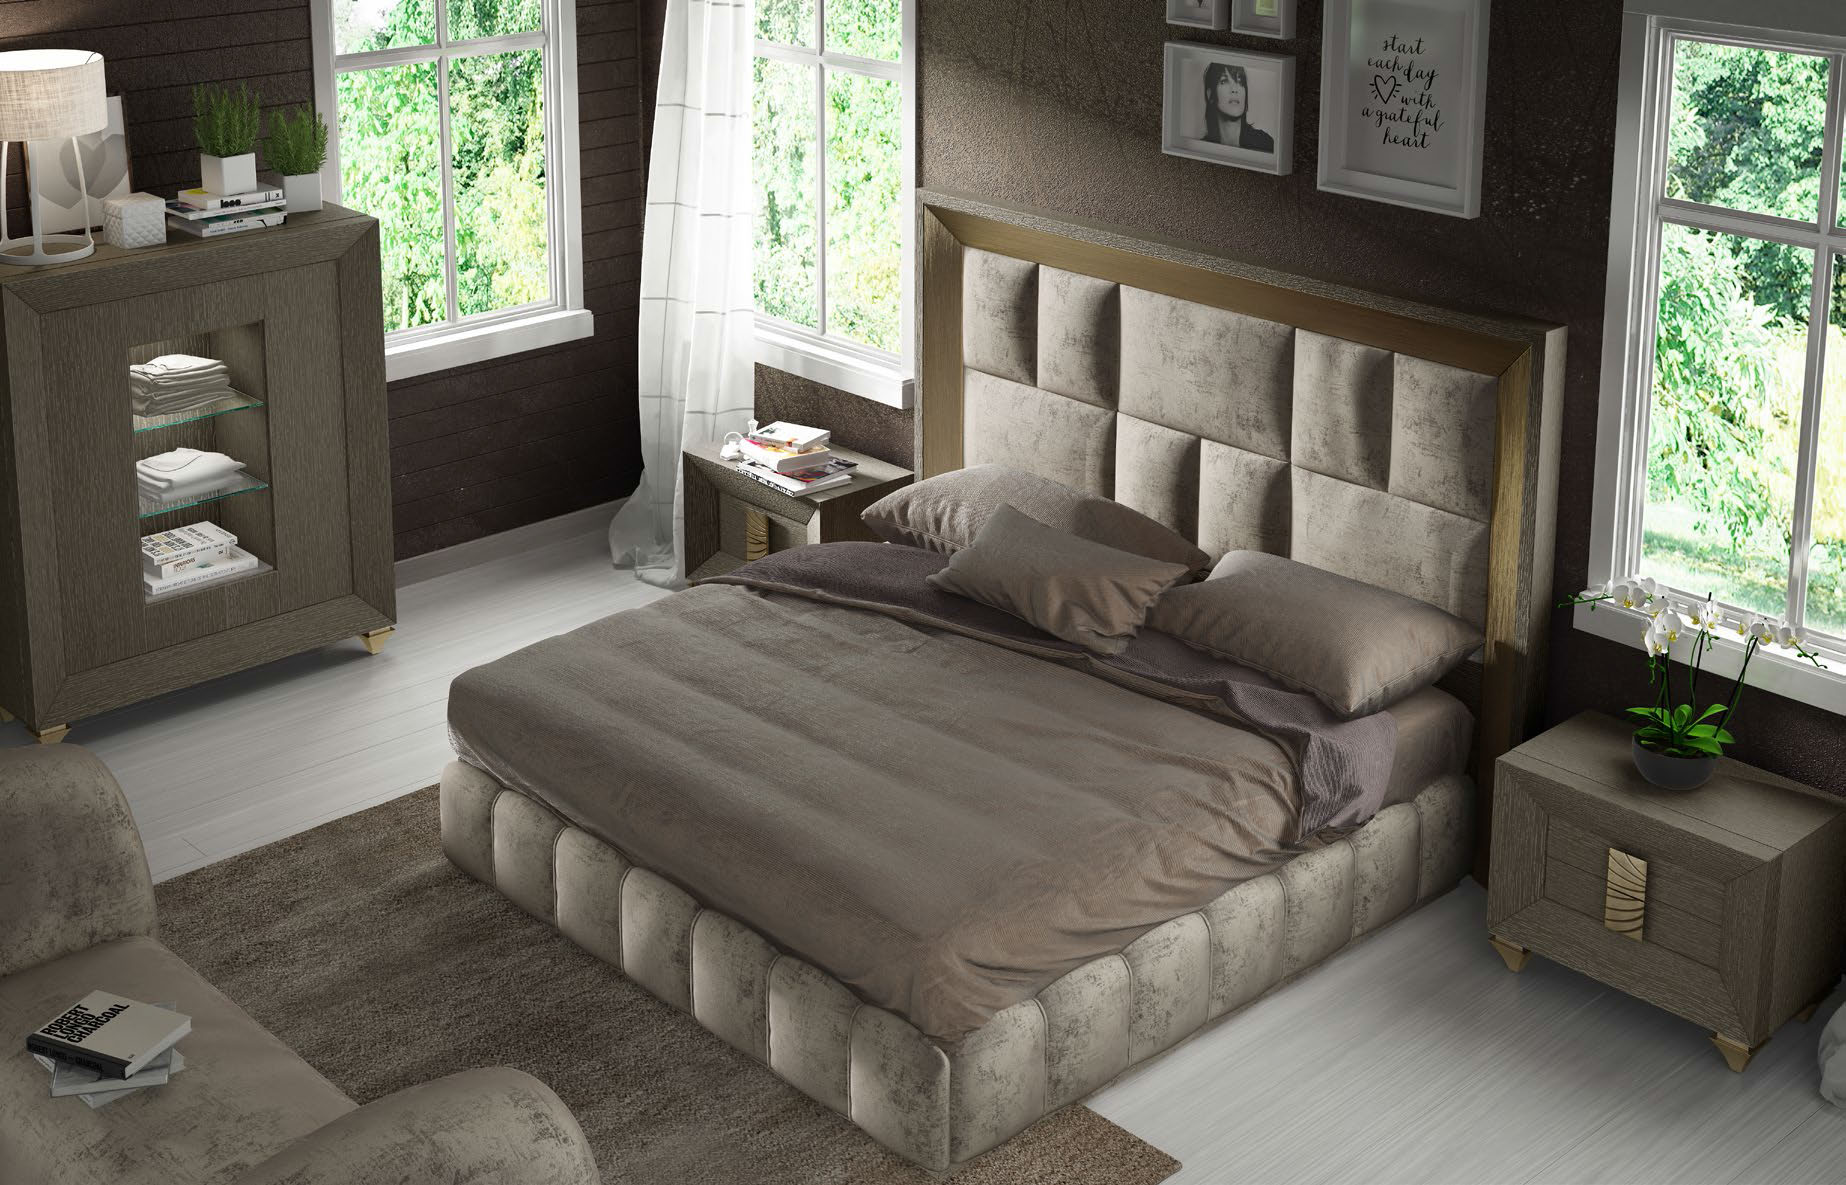 Brands Franco Furniture Avanty Bedrooms, Spain DOR 111